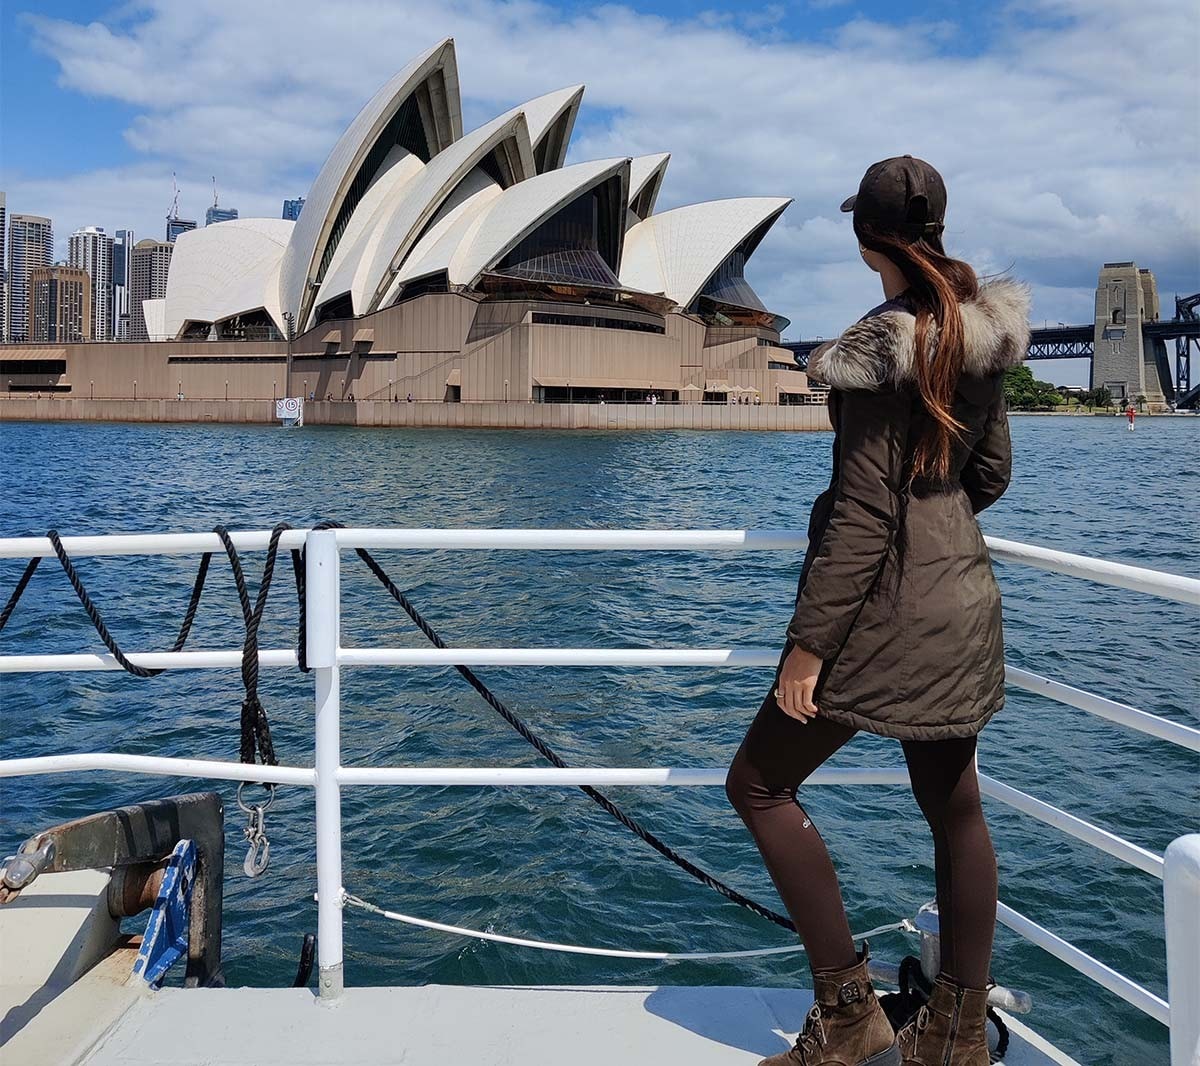 Lexie Limitless bestaunt die Aussicht – die berühmte Oper von Sydney.